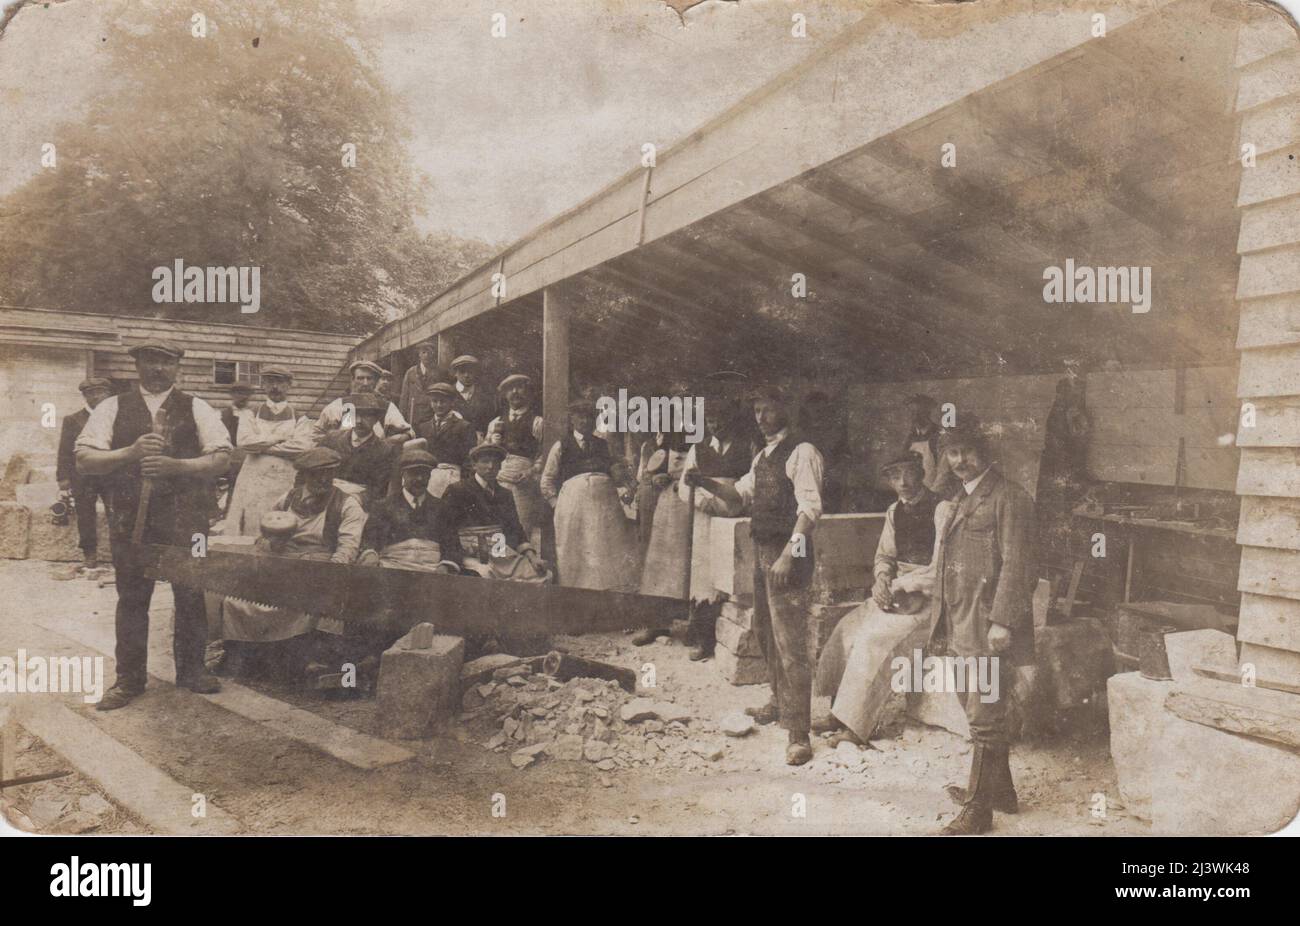 Photographie de grès dans une cour, début 20th siècle. Deux hommes utilisent une scie à friv pour couper un bloc de pierre, les autres hommes se tiennent derrière. Des outils et des blocs de pierre travaillée peuvent être vus en arrière-plan Banque D'Images